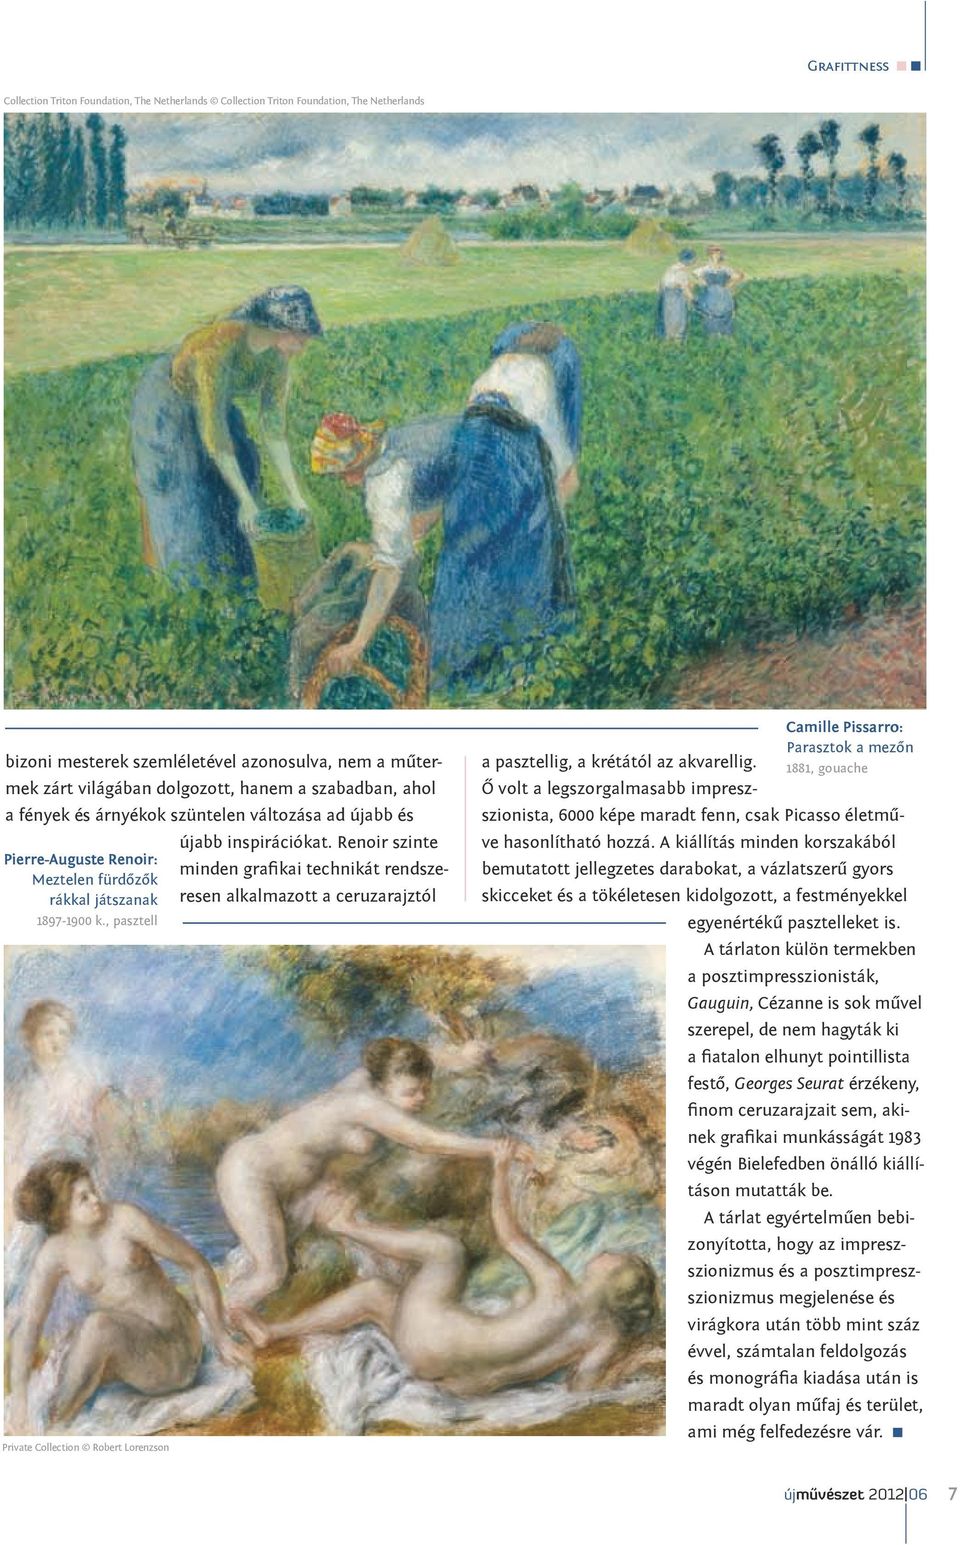 Renoir szinte Pierre-Auguste Renoir: minden grafikai technikát rendszeresen alkalmazott a Meztelen fürdőzők rákkal játszanak ceruzarajztól 1897-1900 k.